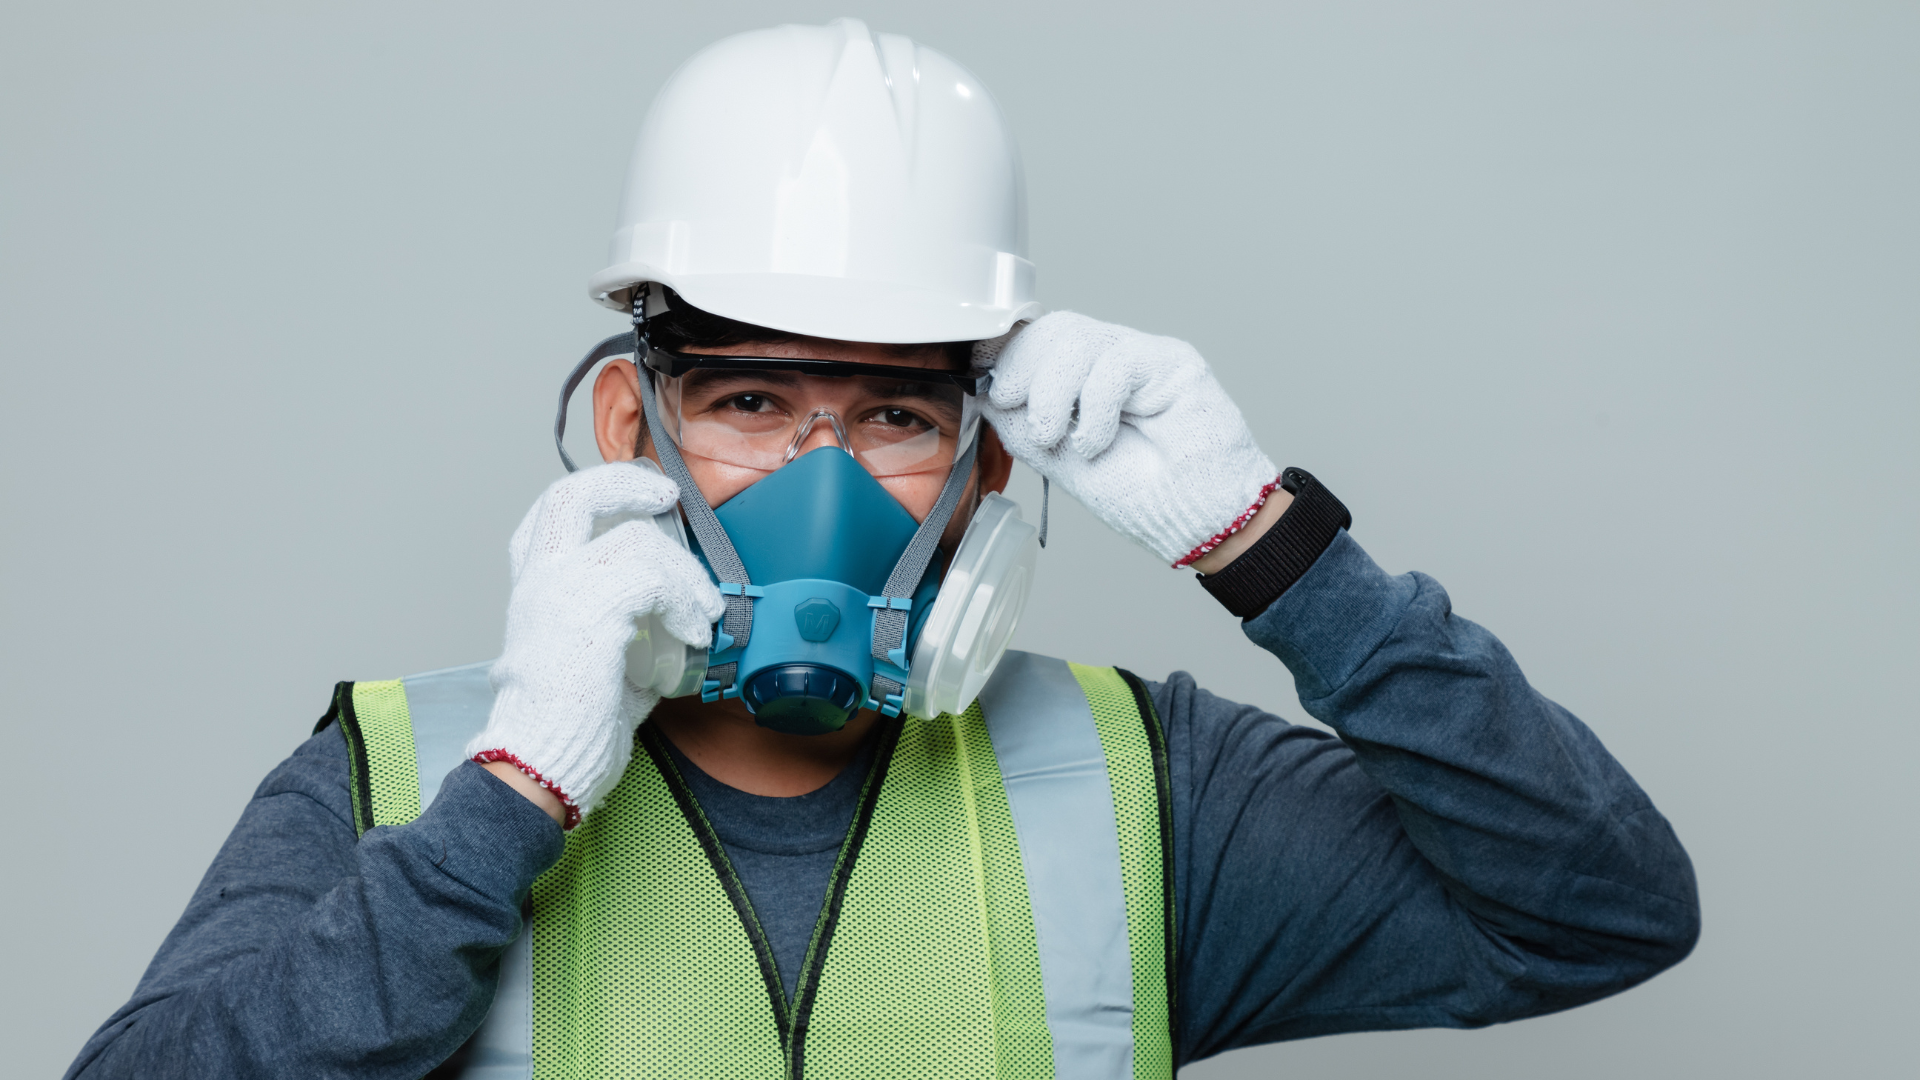 Cardon Construction, lung disease in construction, prevent lung diseases in construction